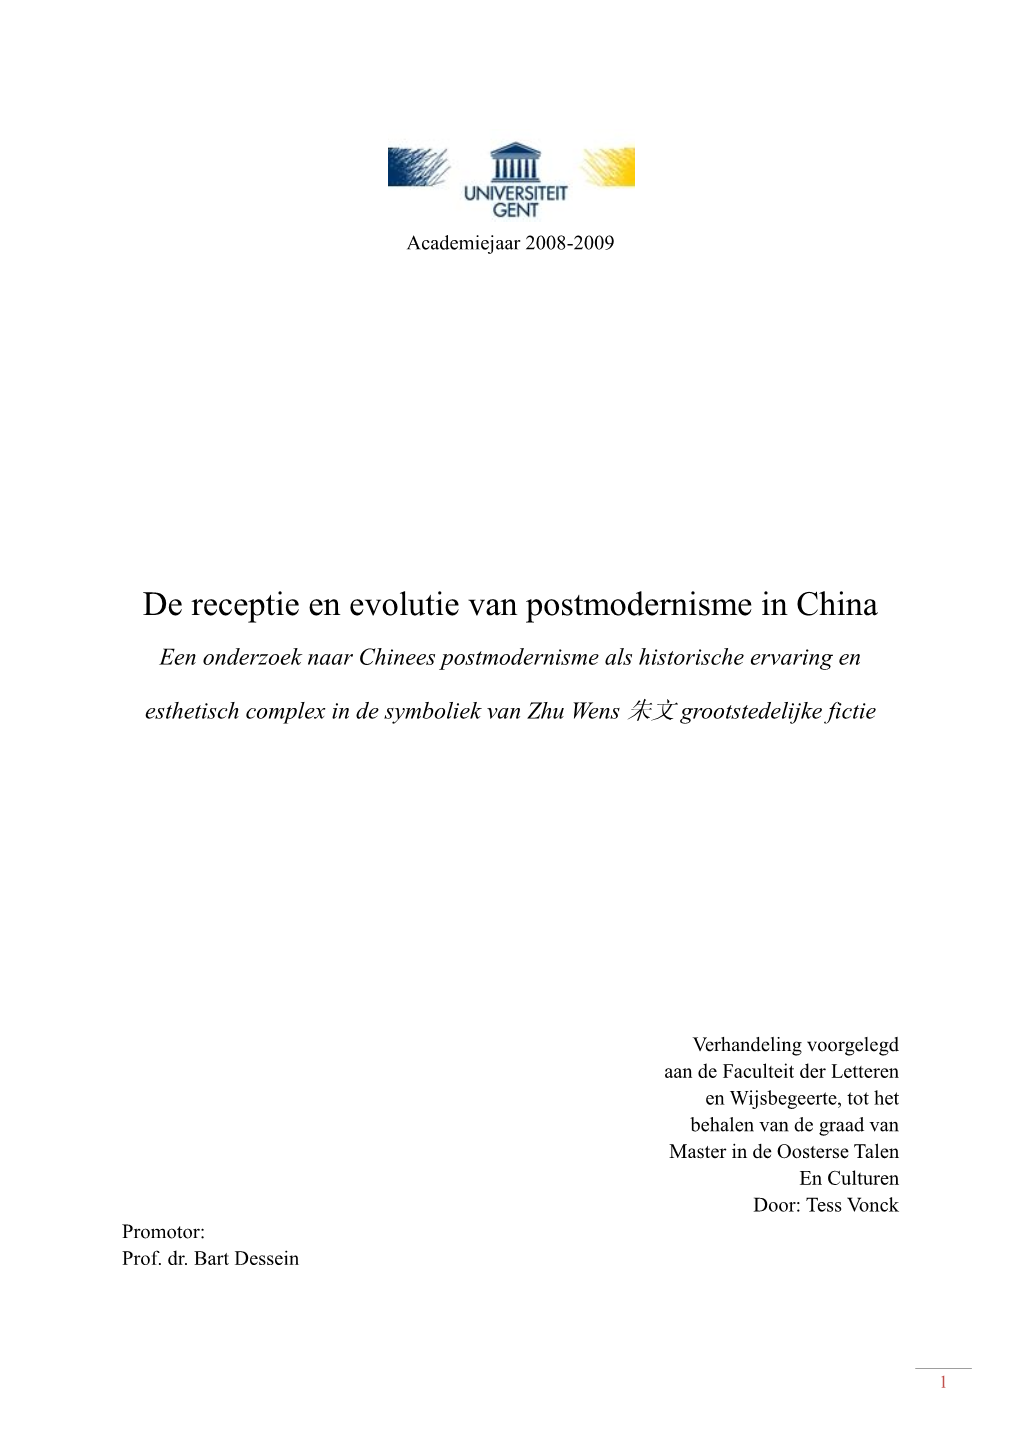 De Receptie En Evolutie Van Postmodernisme in China Een Onderzoek Naar Chinees Postmodernisme Als Historische Ervaring En